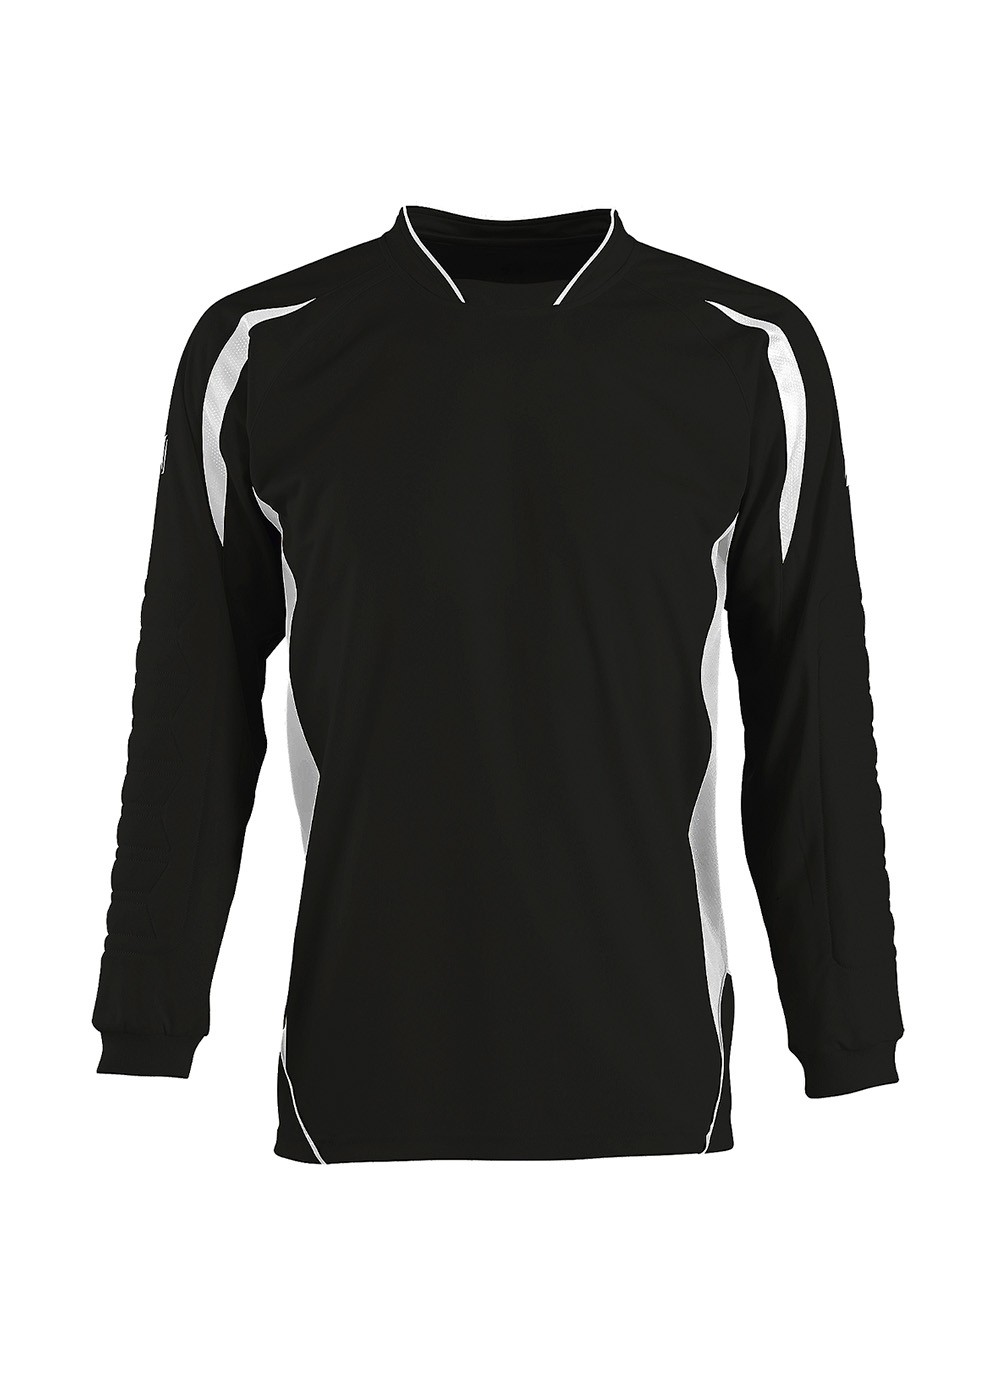 Goalkeeper Shirt Black/White